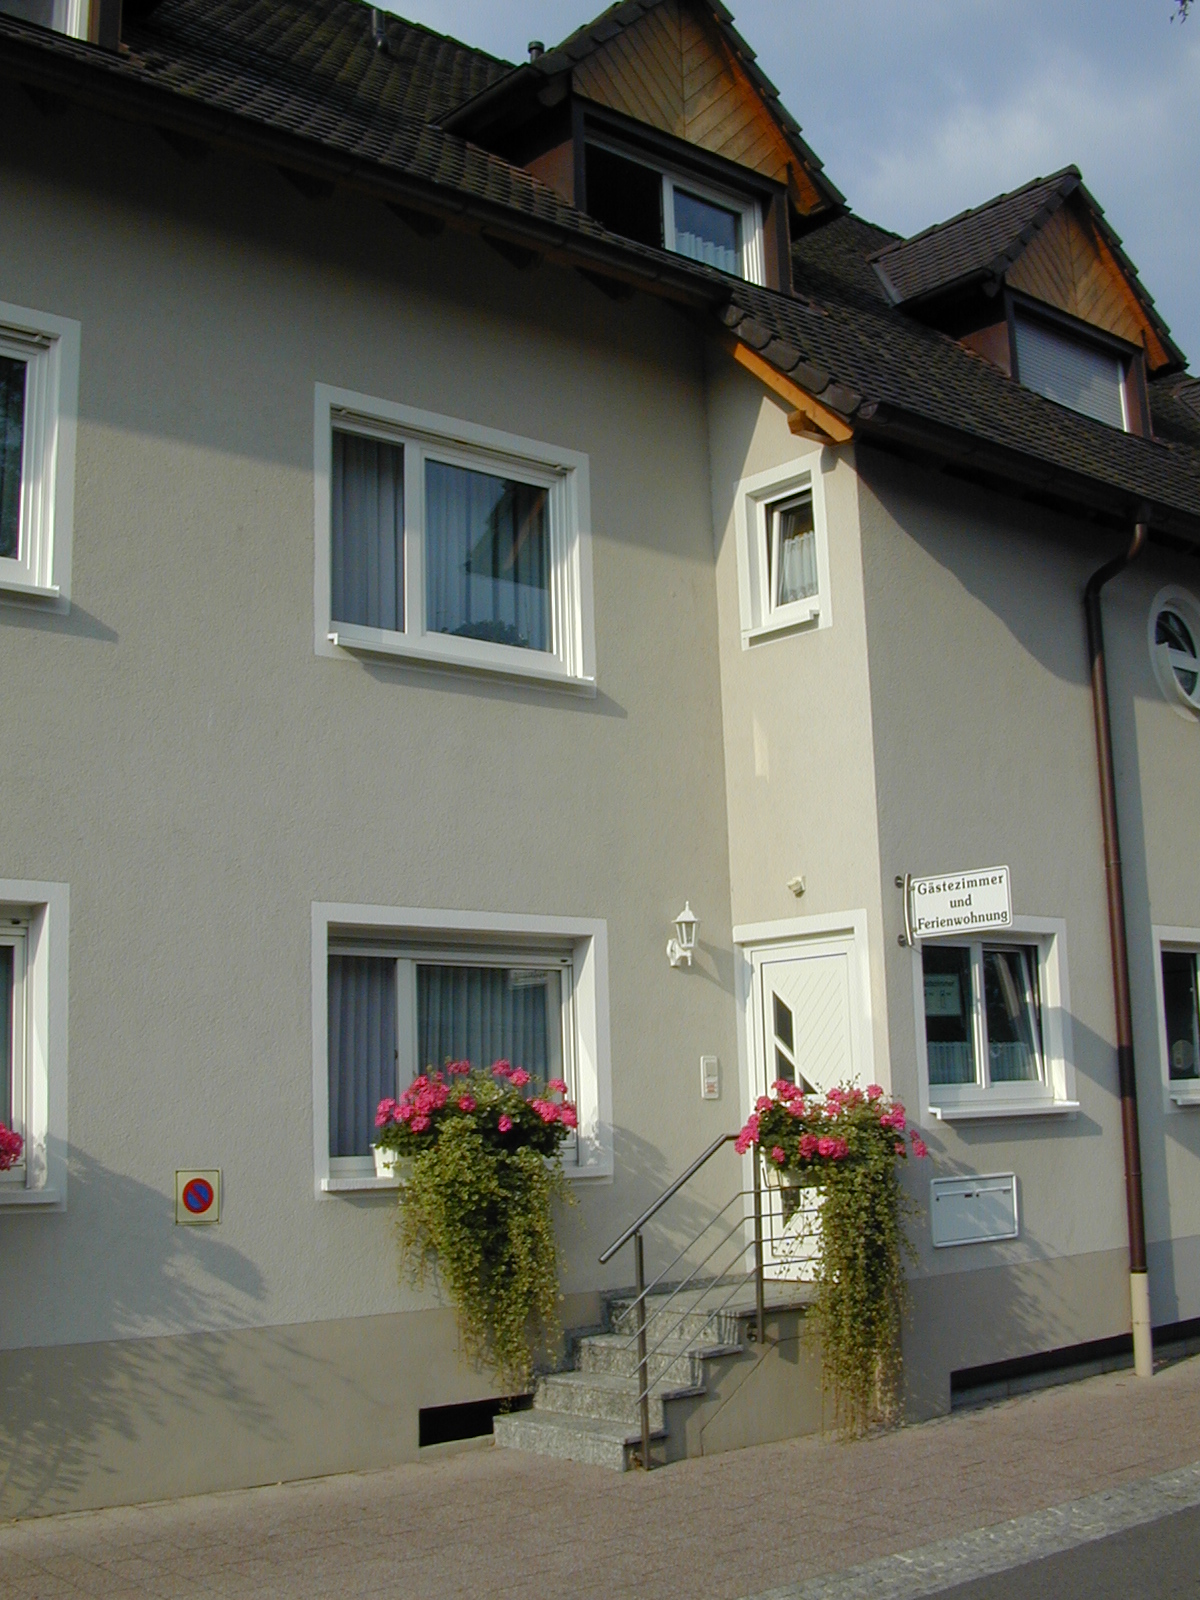 The Fehrenbach House